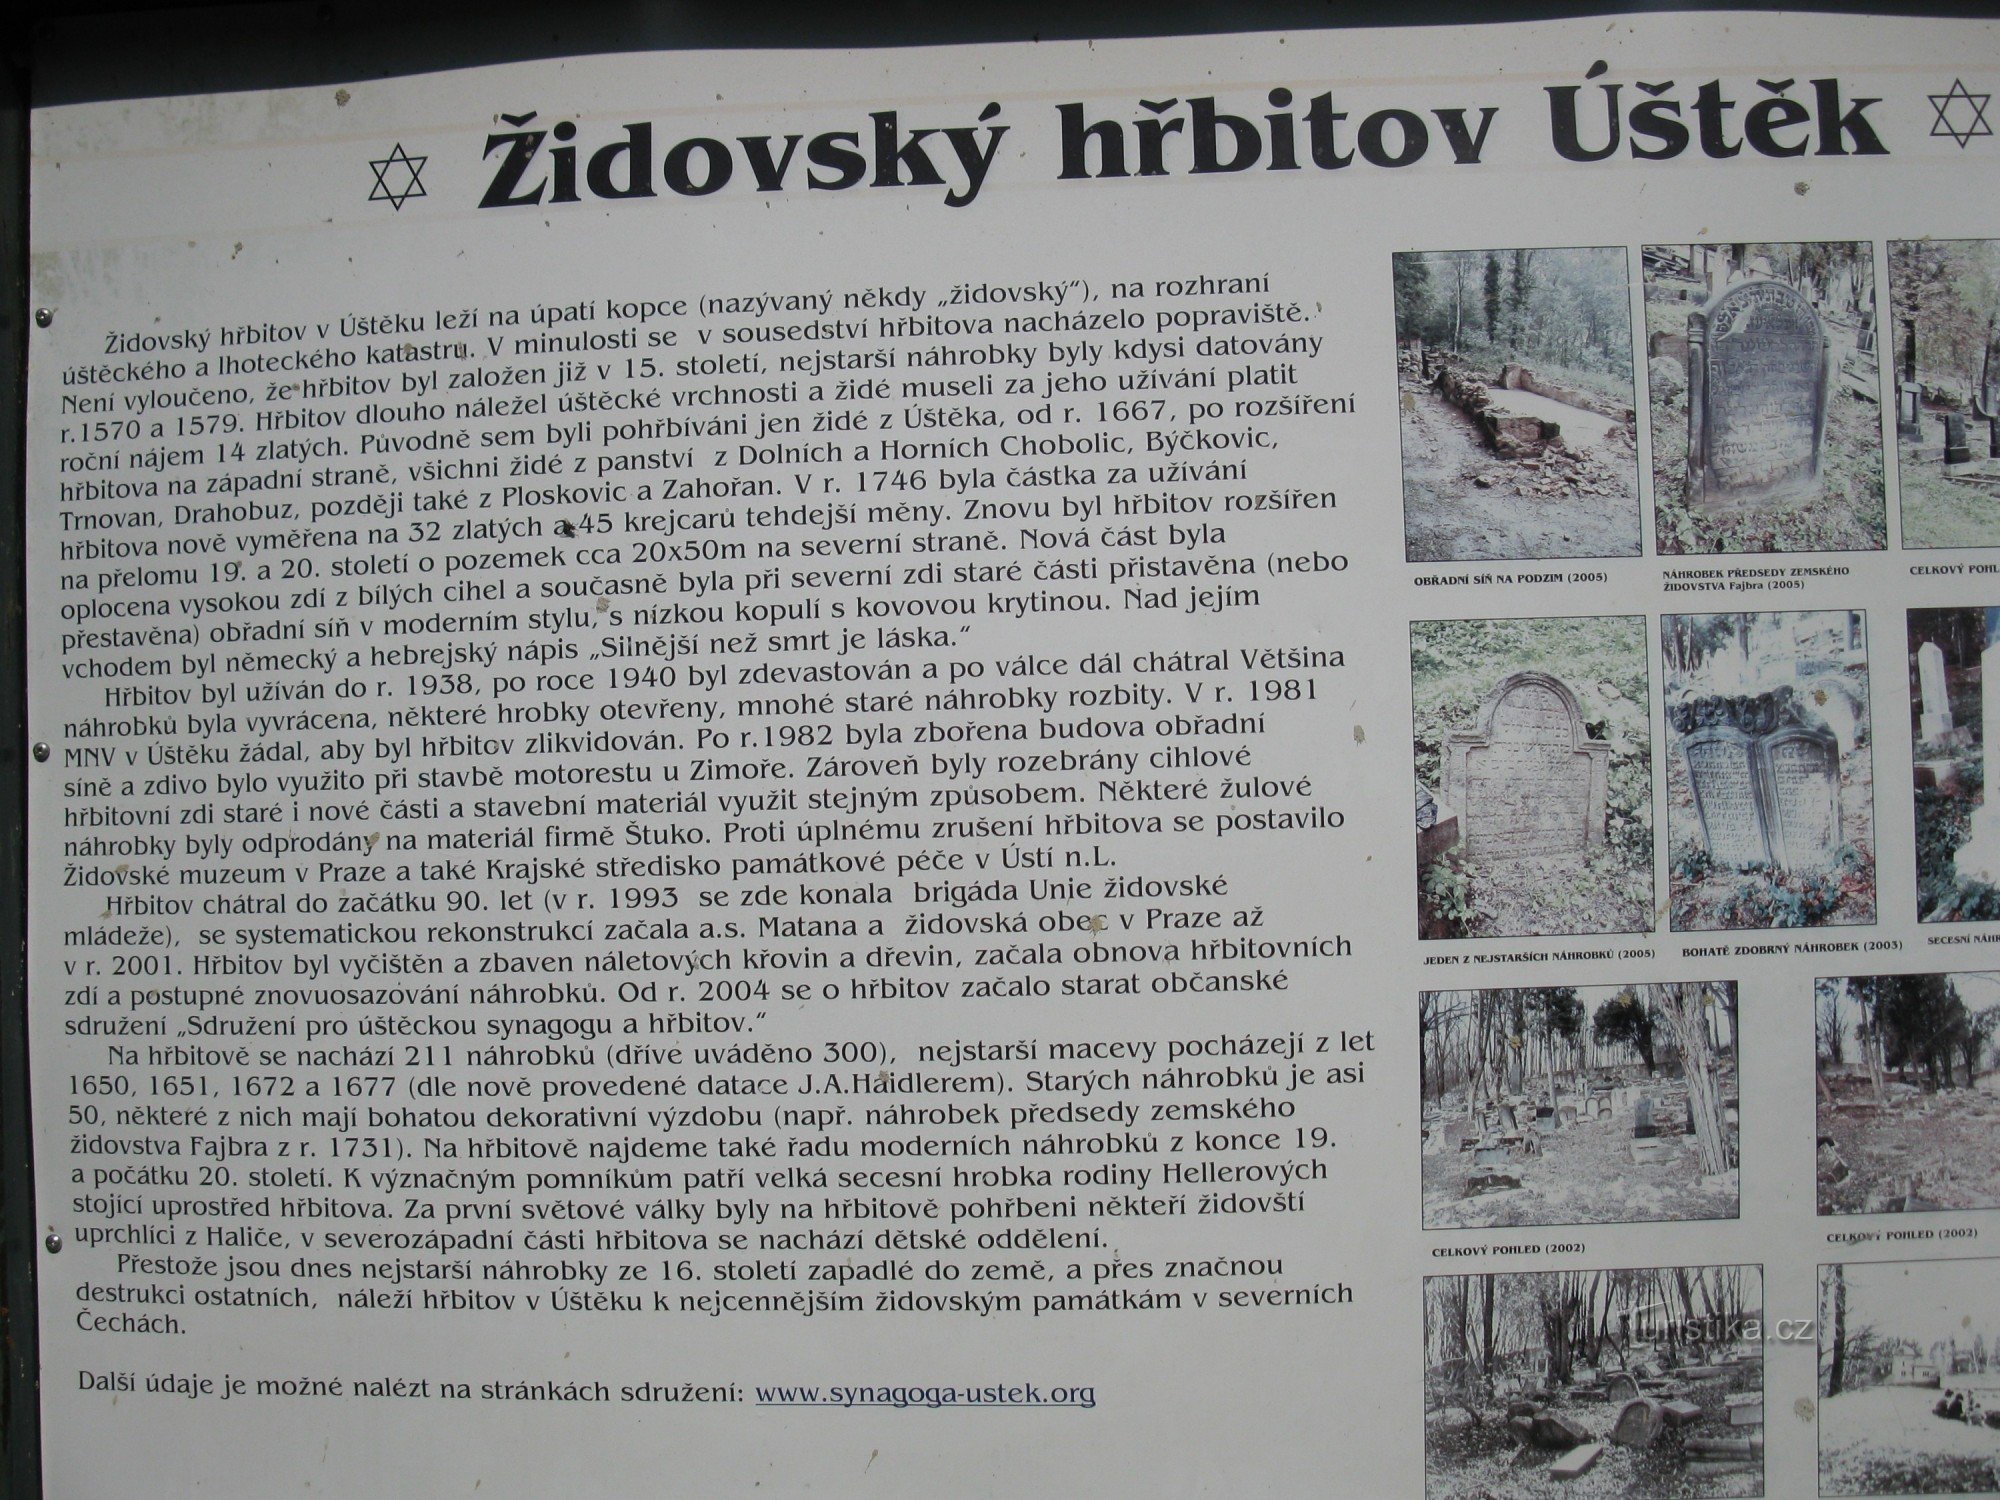 ウシュチェク ユダヤ人墓地